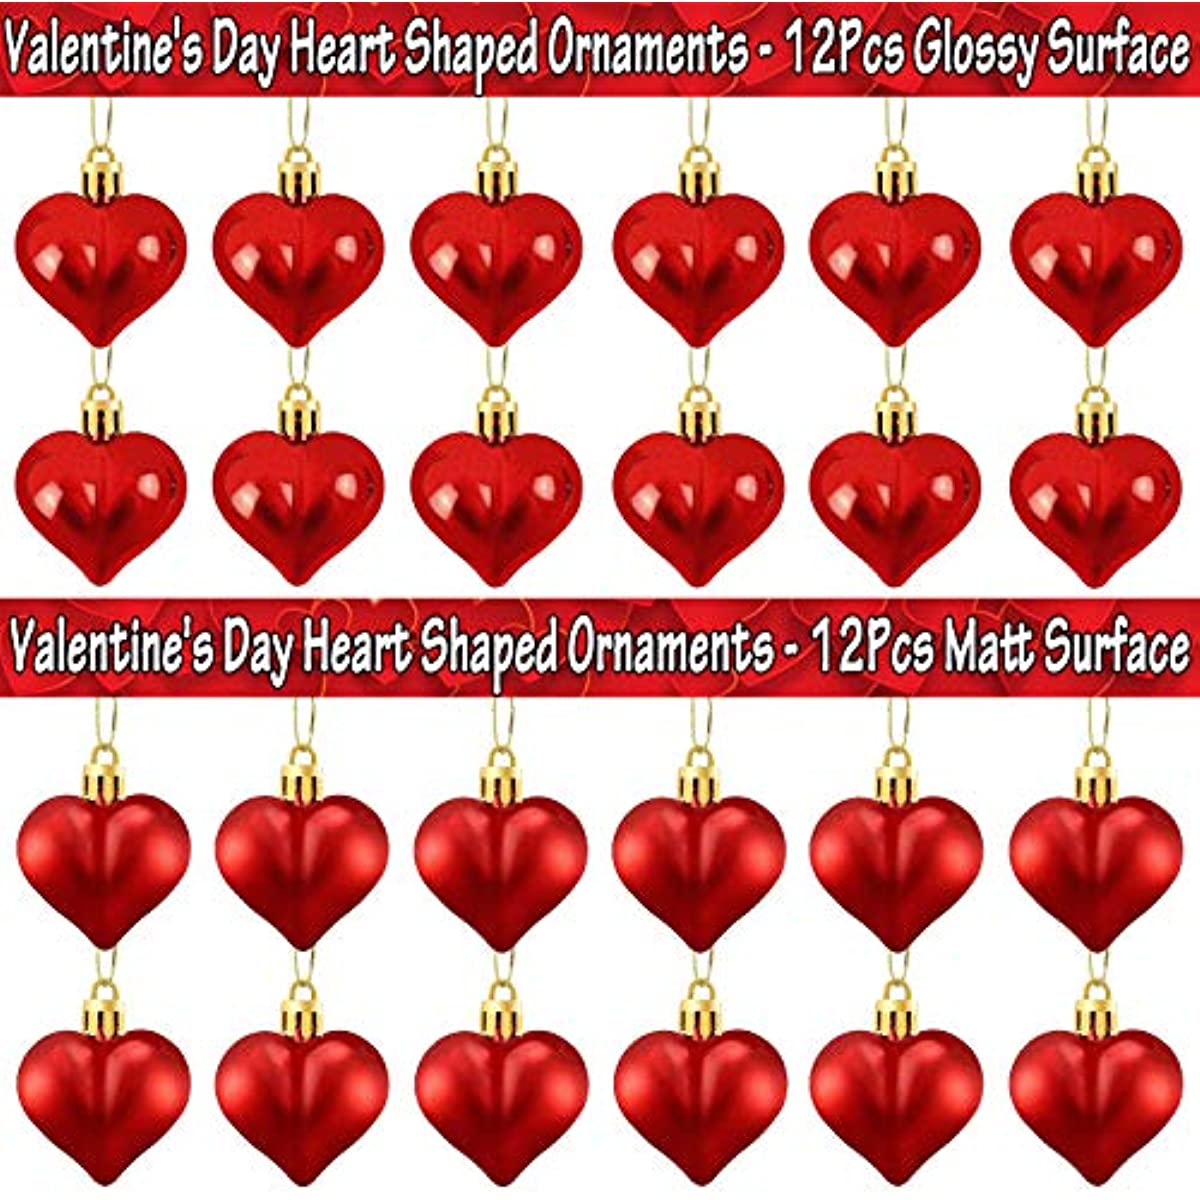 24 Stück, Valentinstag Herzförmige Ornamente, glänzende und matte Herzkugeln hängende Dekorationen für Valentinstag Hochzeit Jubiläum Home Party Dekor